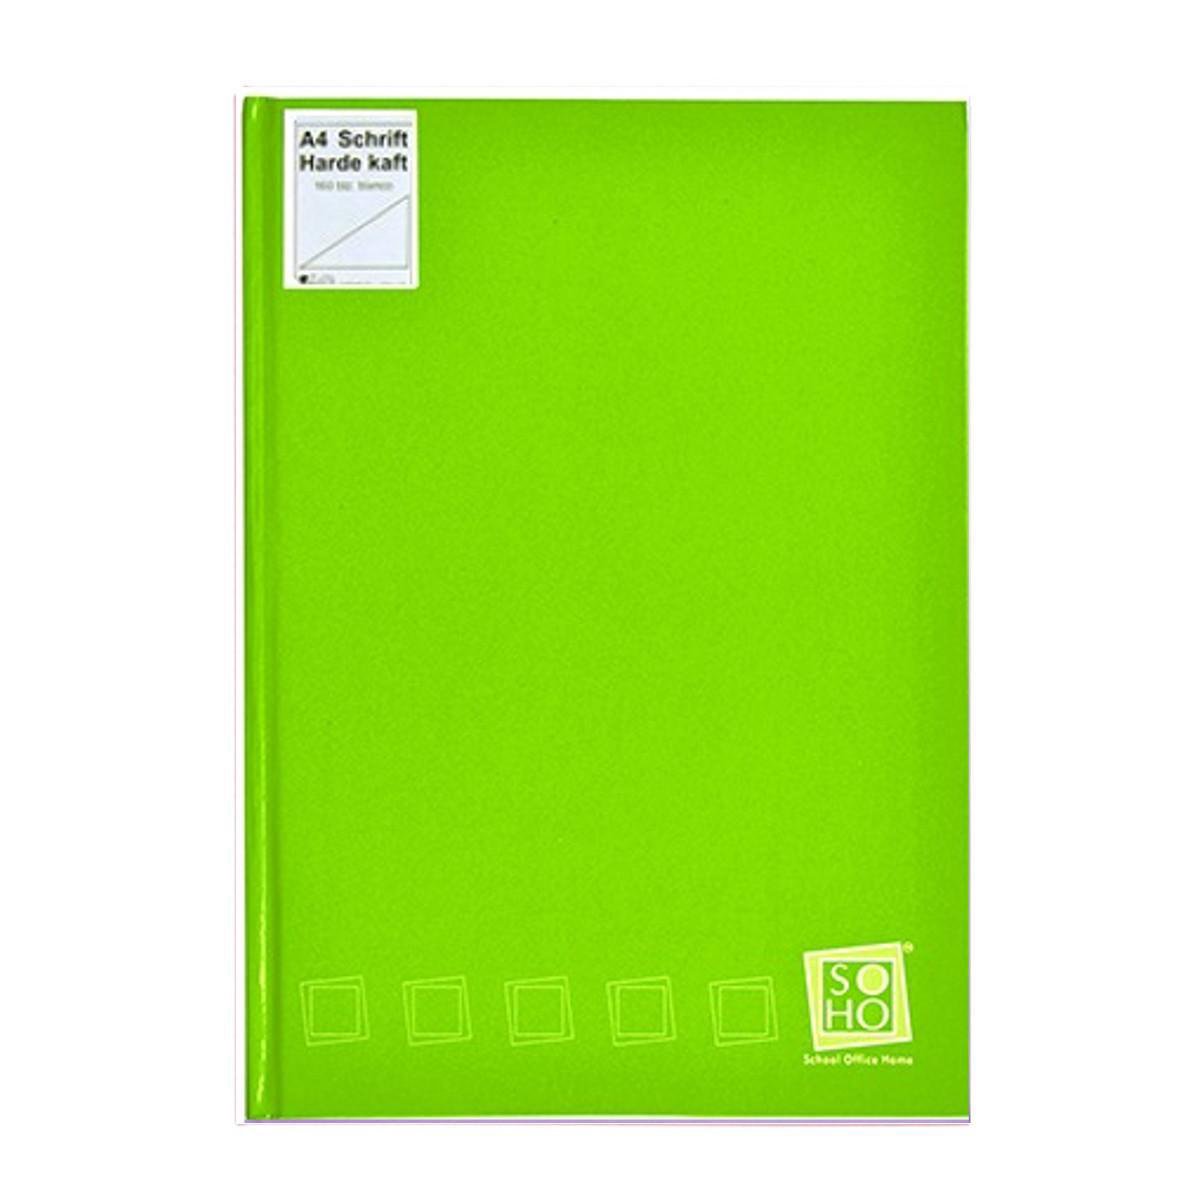 Groot Notitieboek A4 met harde kaft - Blanco inhoud - Limegroen Hoogglans - Gratis Verzonden